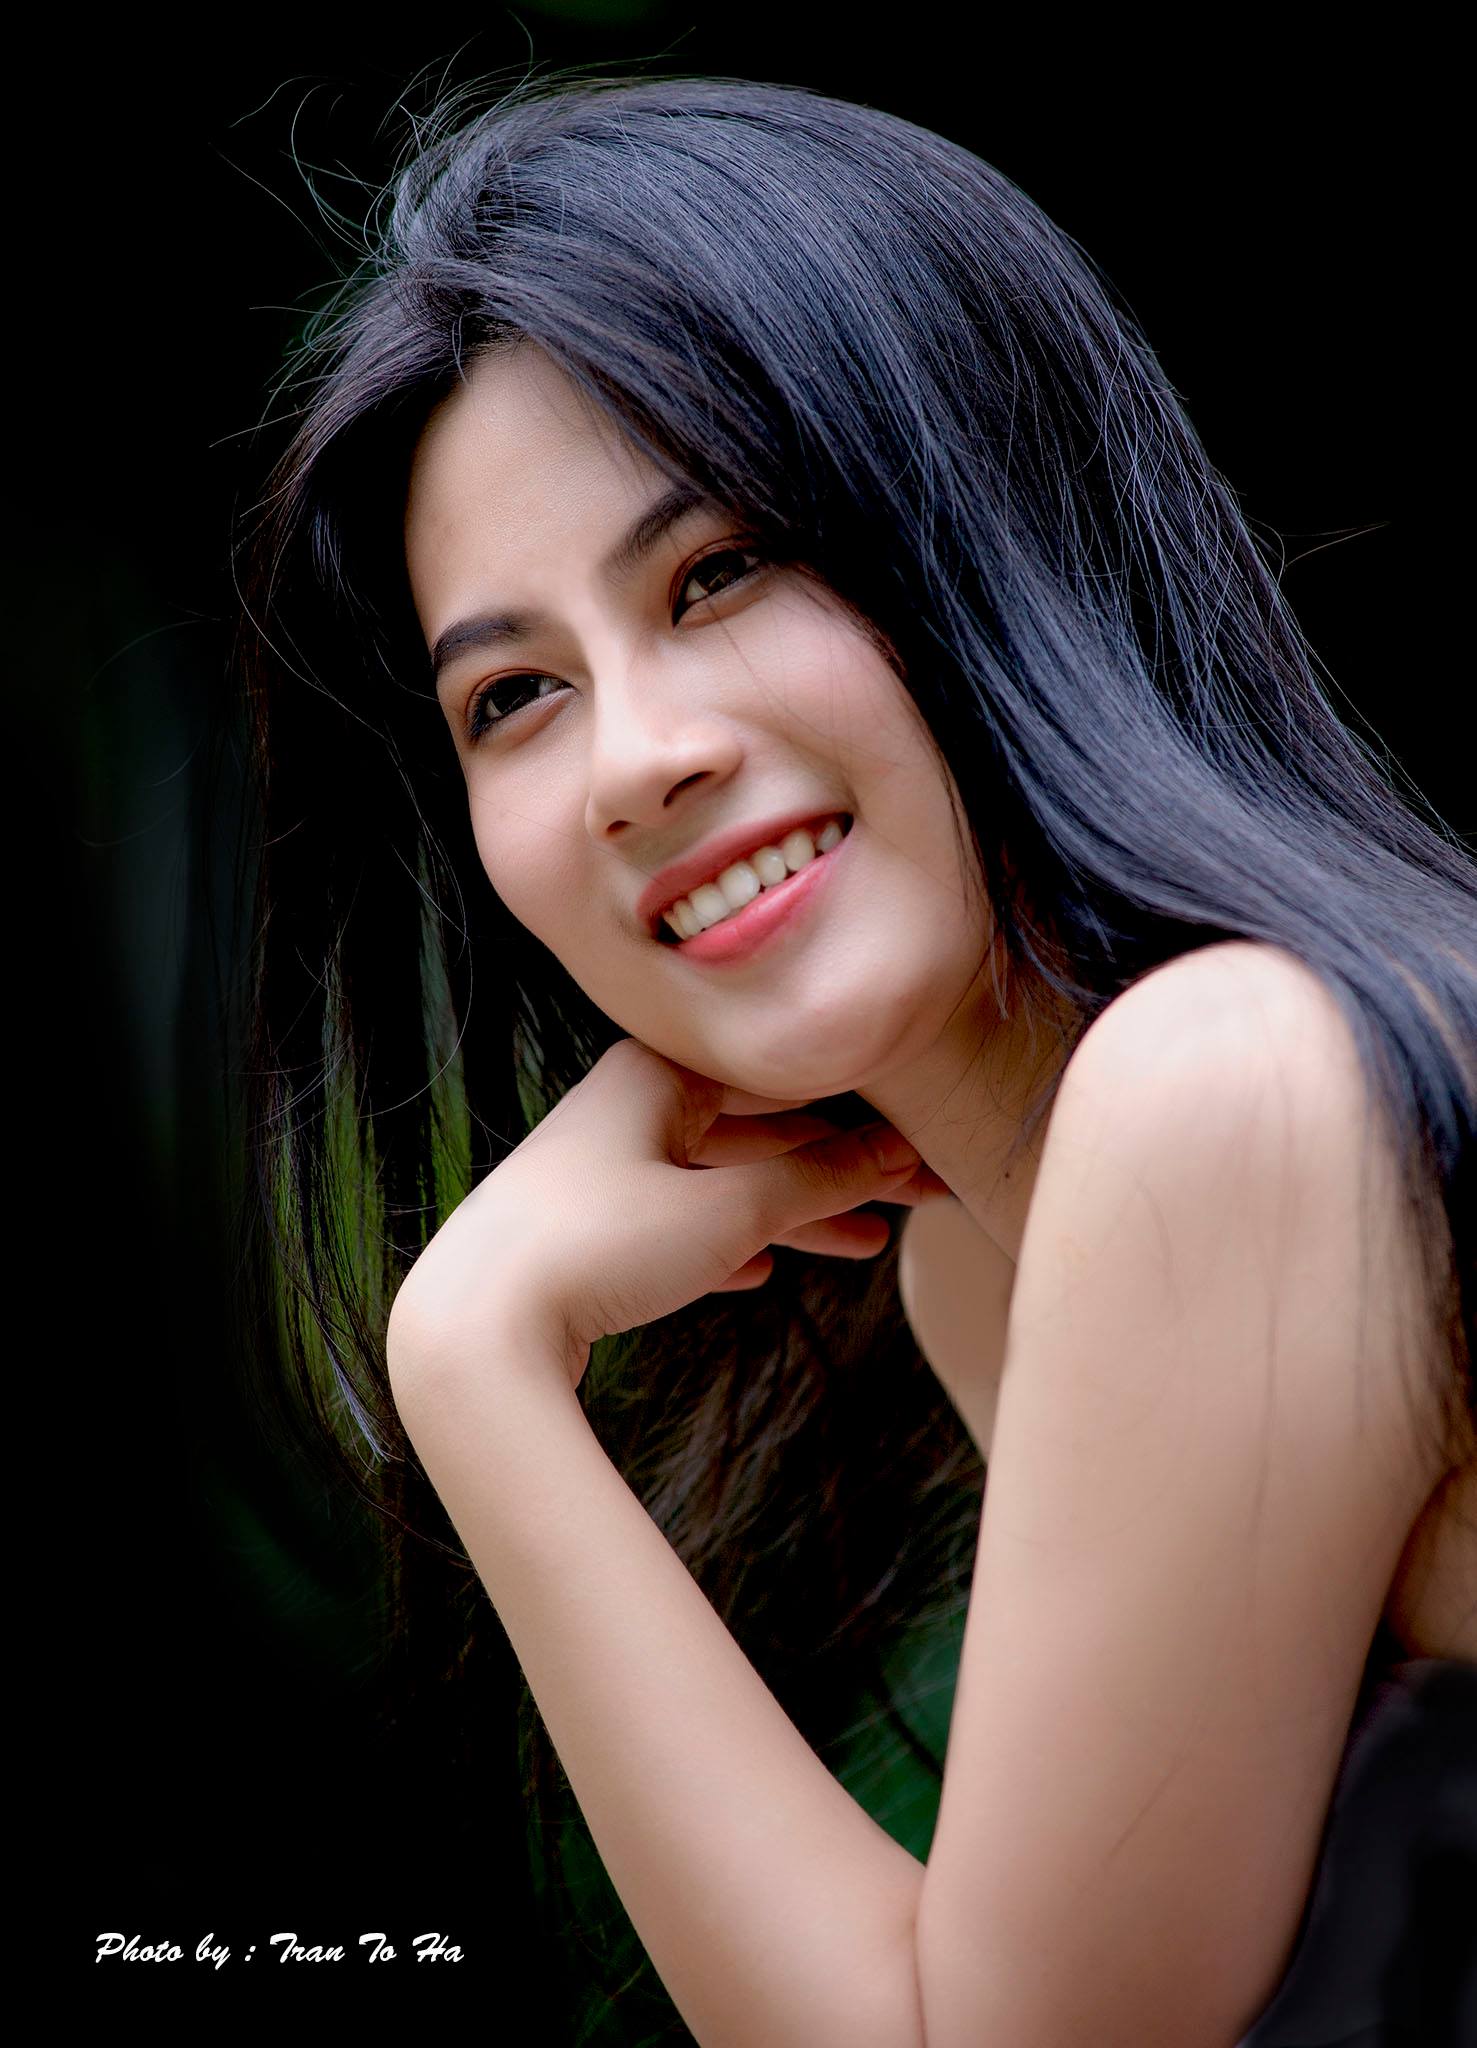 Vietnamese girl. Вьетнамки девушки. Вьетнамские красавицы. Самые красивые девушки Вьетнама. Вьетнамская внешность.